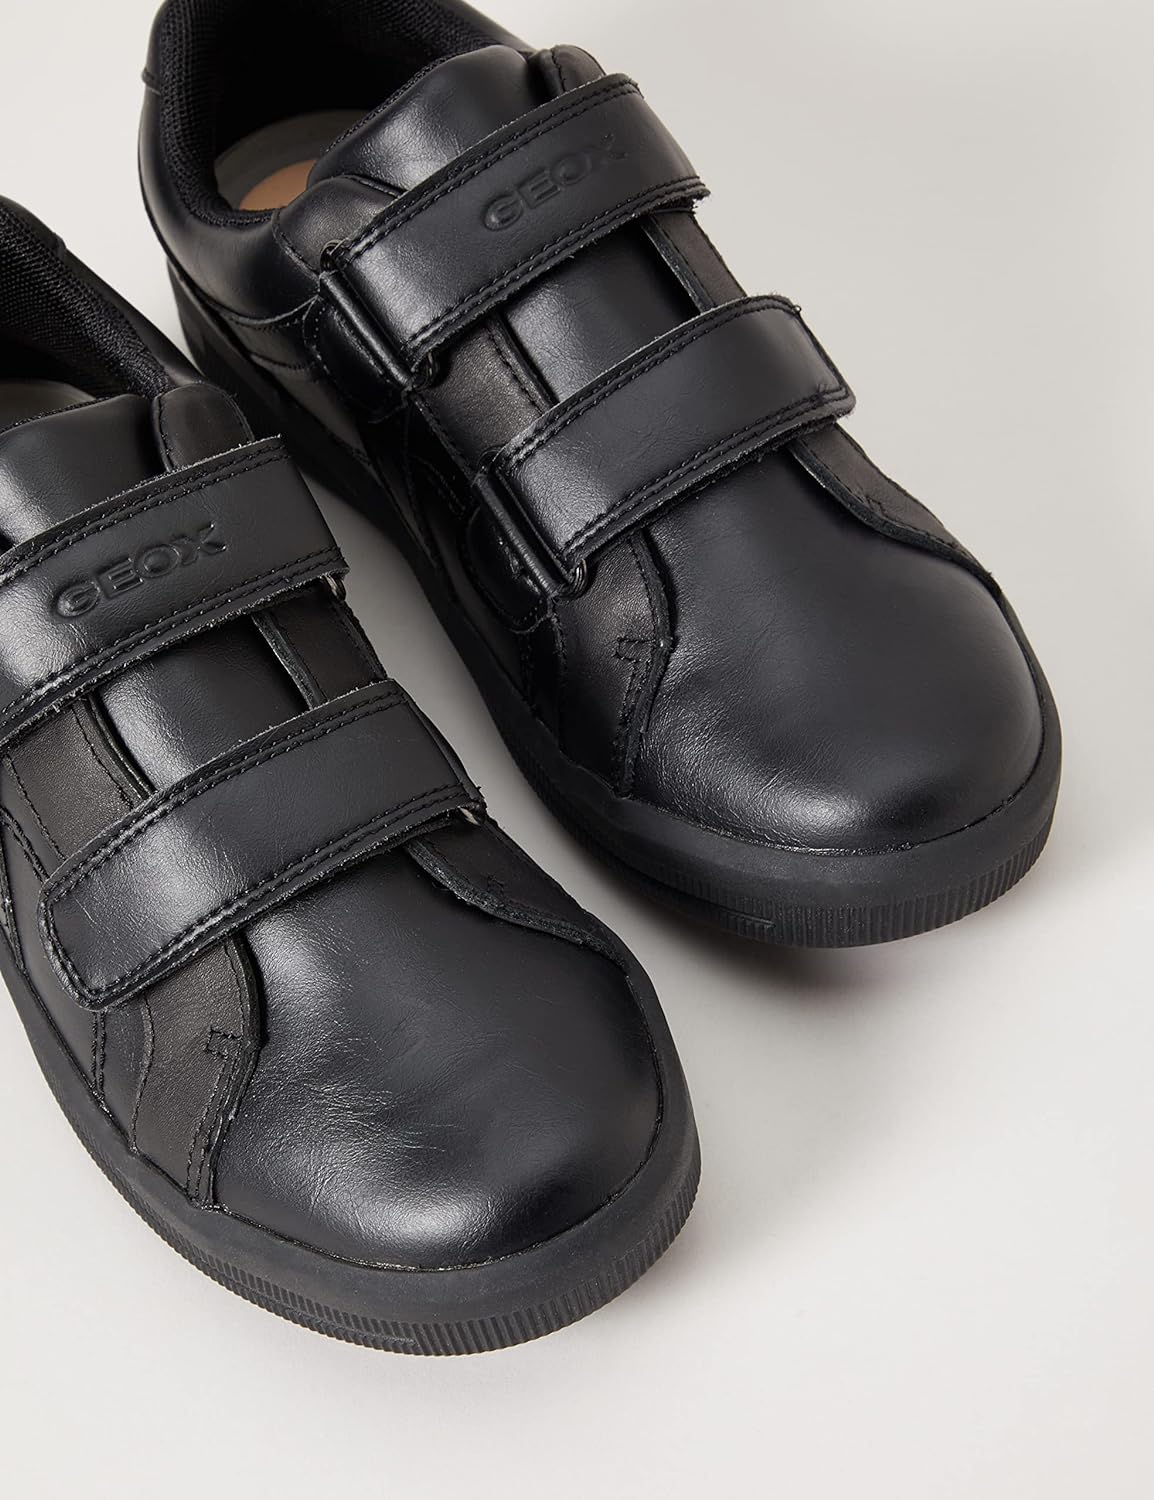 Geox Boy's J Arzach G Sneakers Rubber Black 38 EU (5 UK Child)